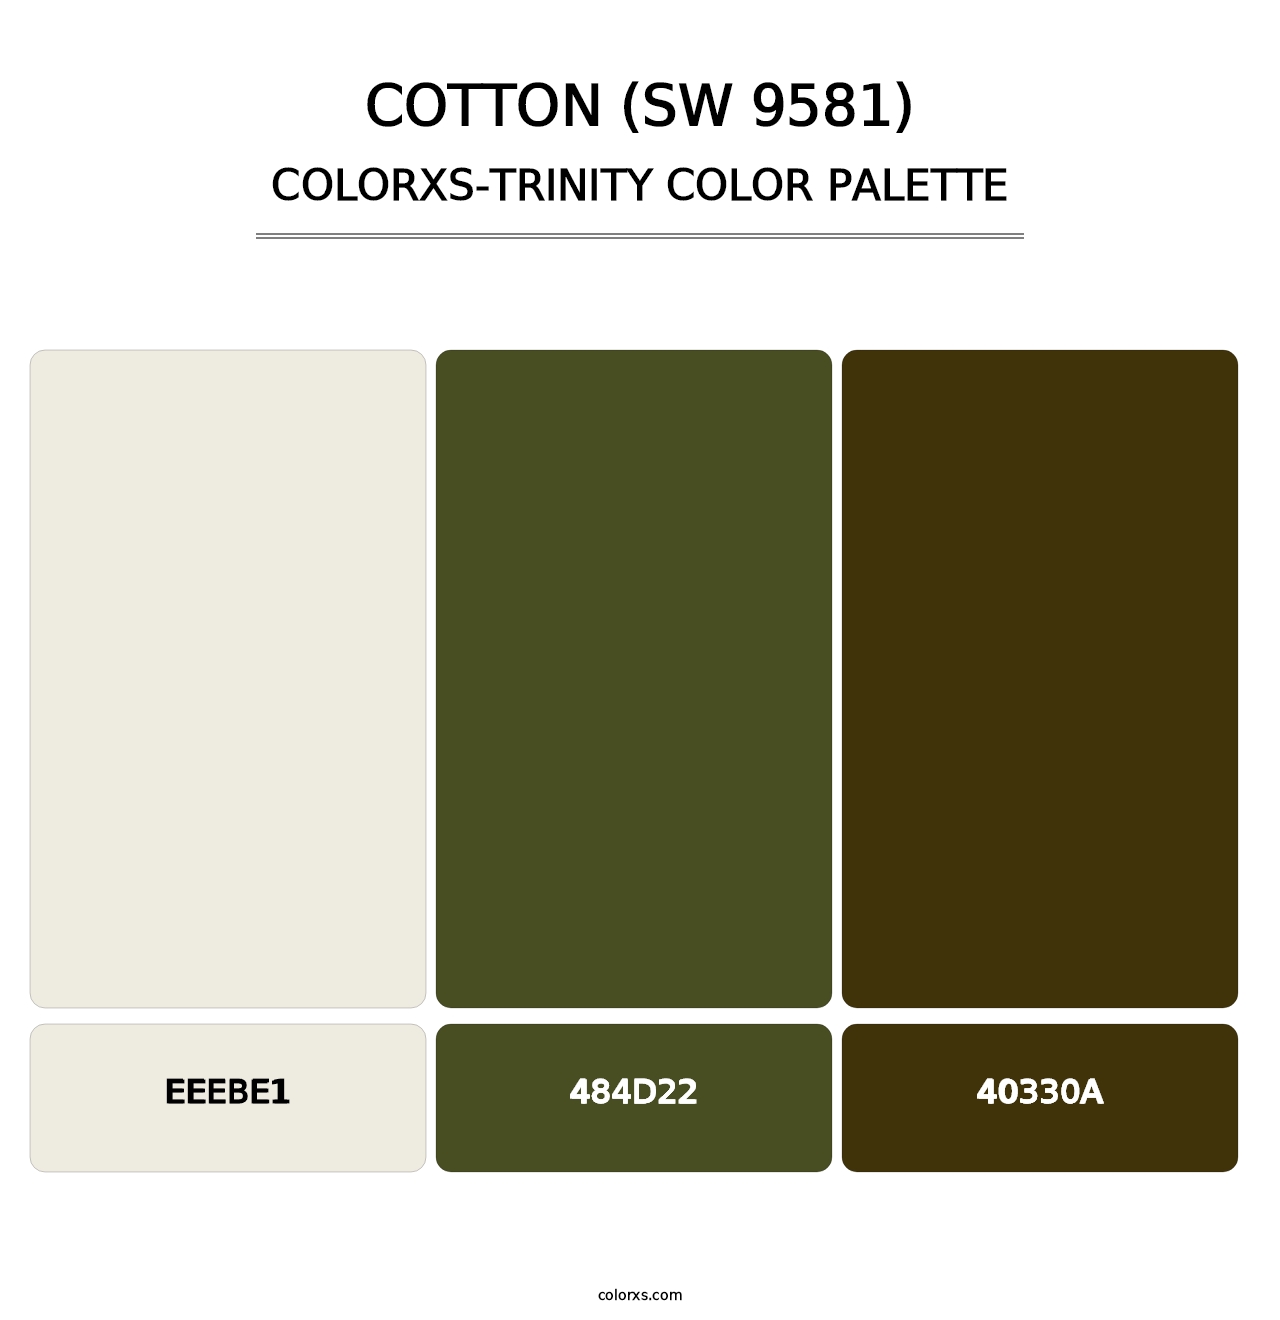 Cotton (SW 9581) - Colorxs Trinity Palette